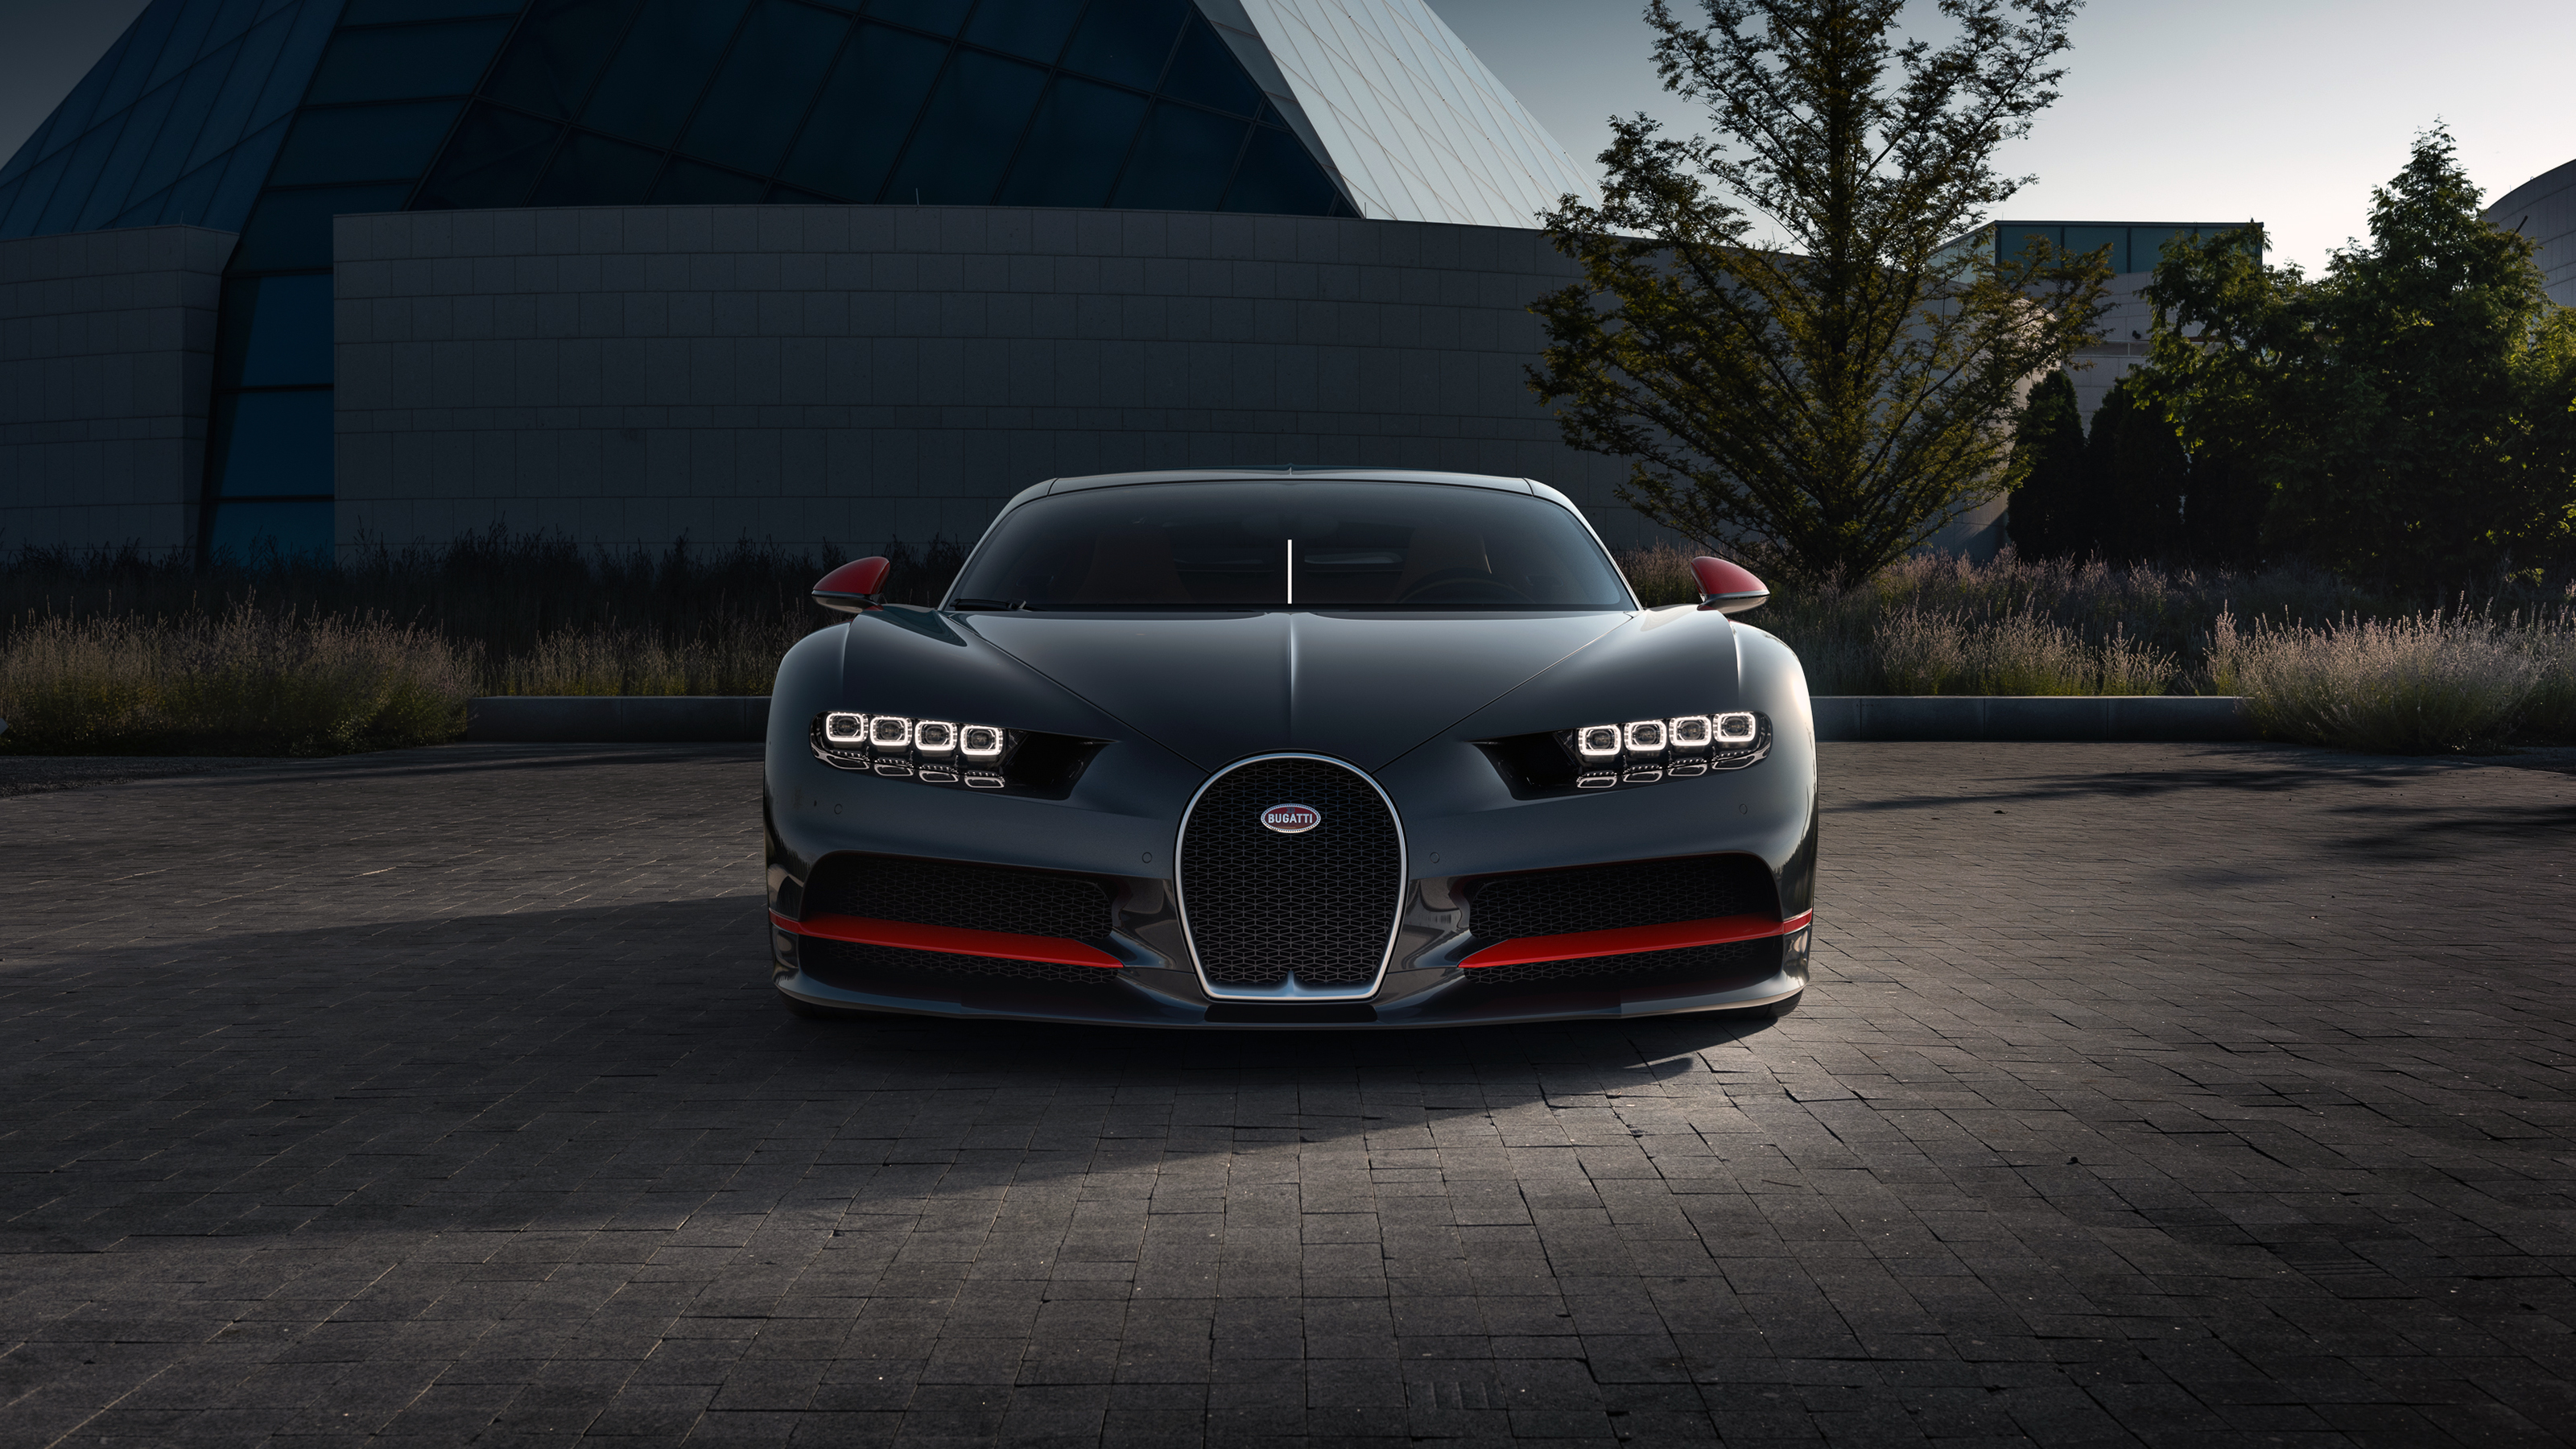 Descarga gratuita de fondo de pantalla para móvil de Bugatti Quirón, Vehículos.